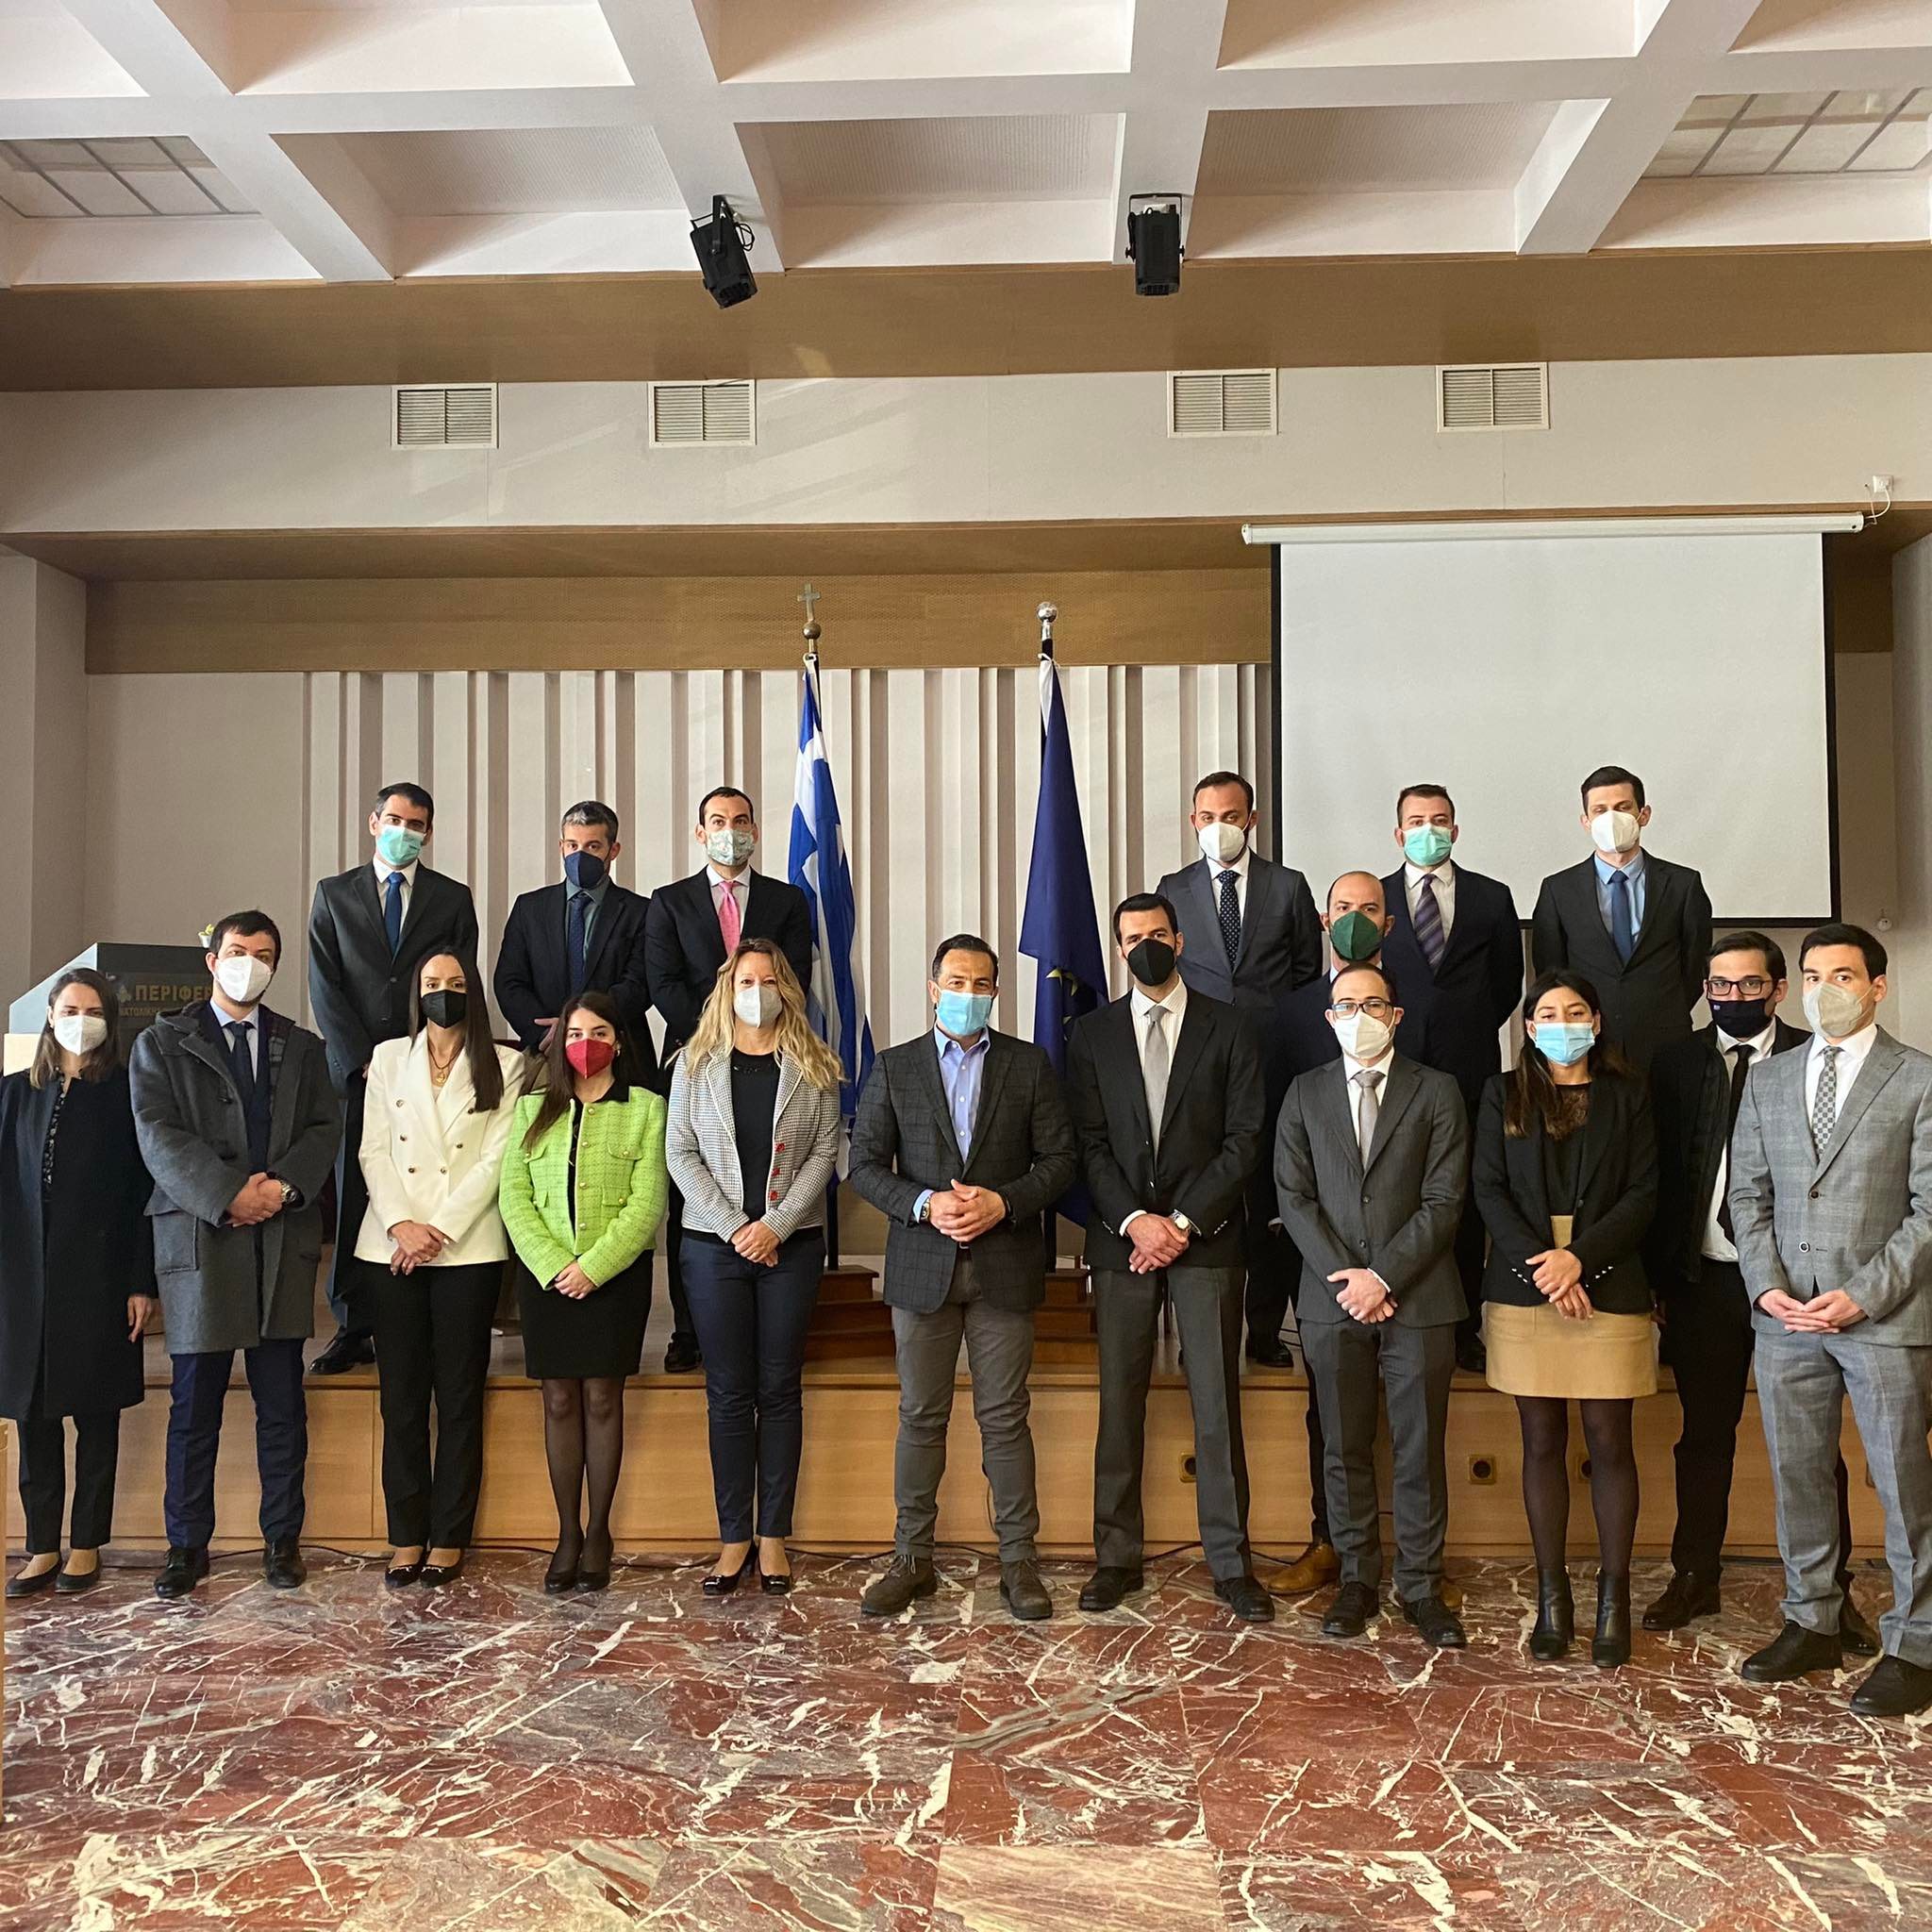 Επίσκεψη της ΔιπλωματικήςΑκαδημίας του Υπουργείου Εξωτερικών στον Αντιπεριφερειάρχη  ΠΕ Ροδόπης